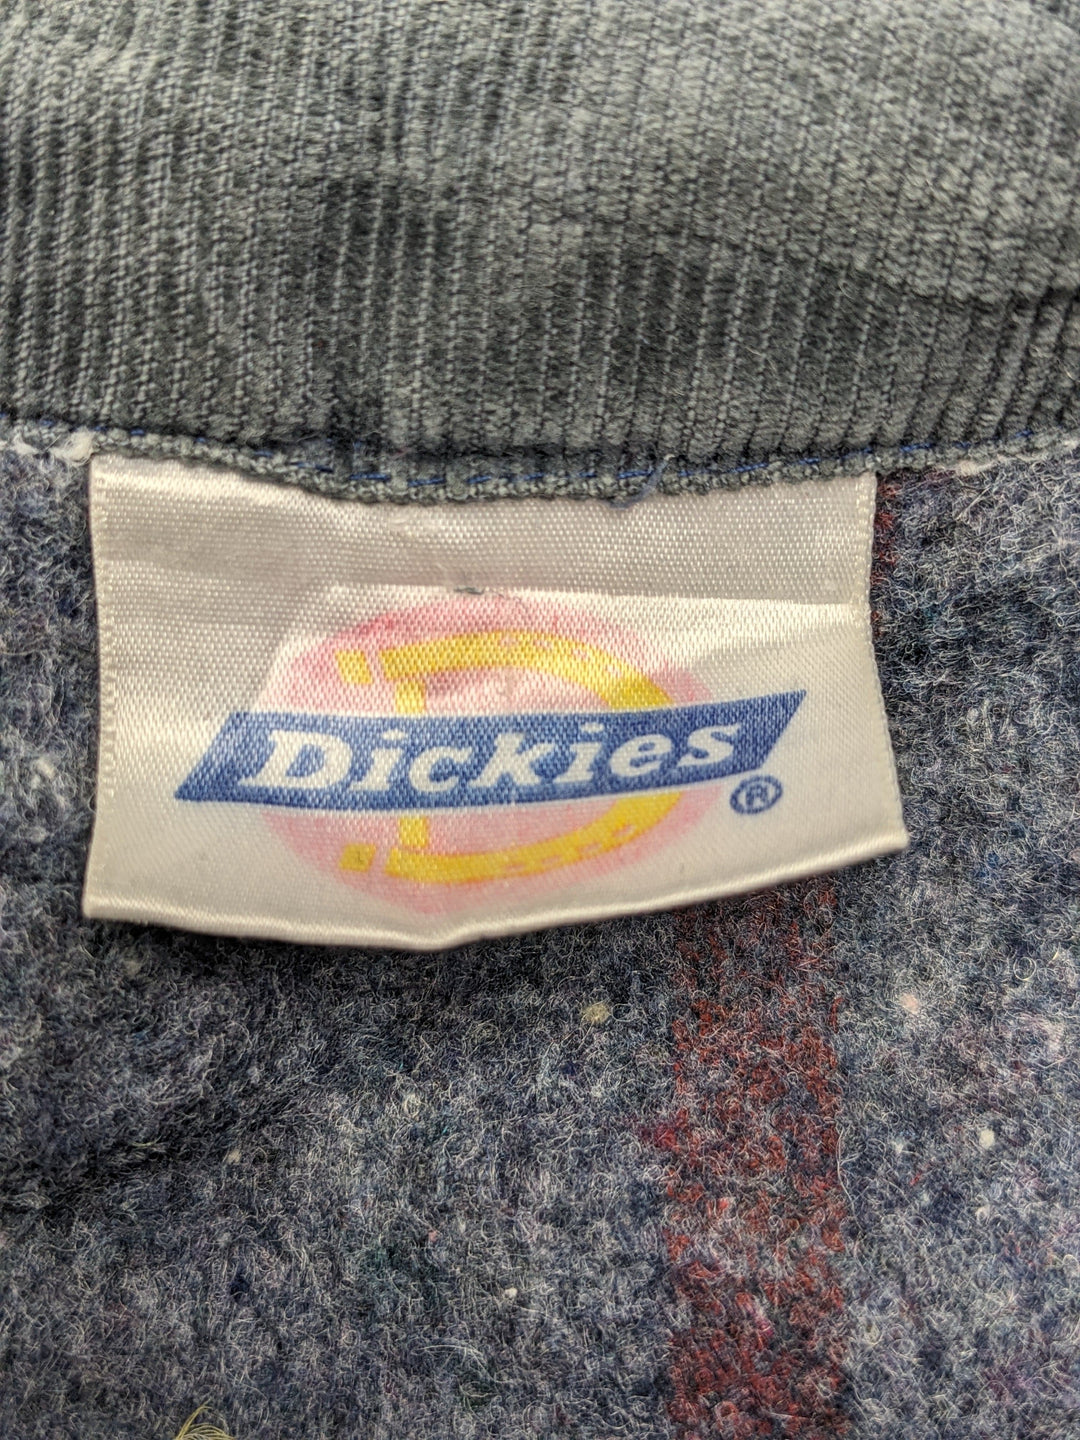 Dickies Blanket Lined Jacket 1 pc 3 lbs C0422228-05